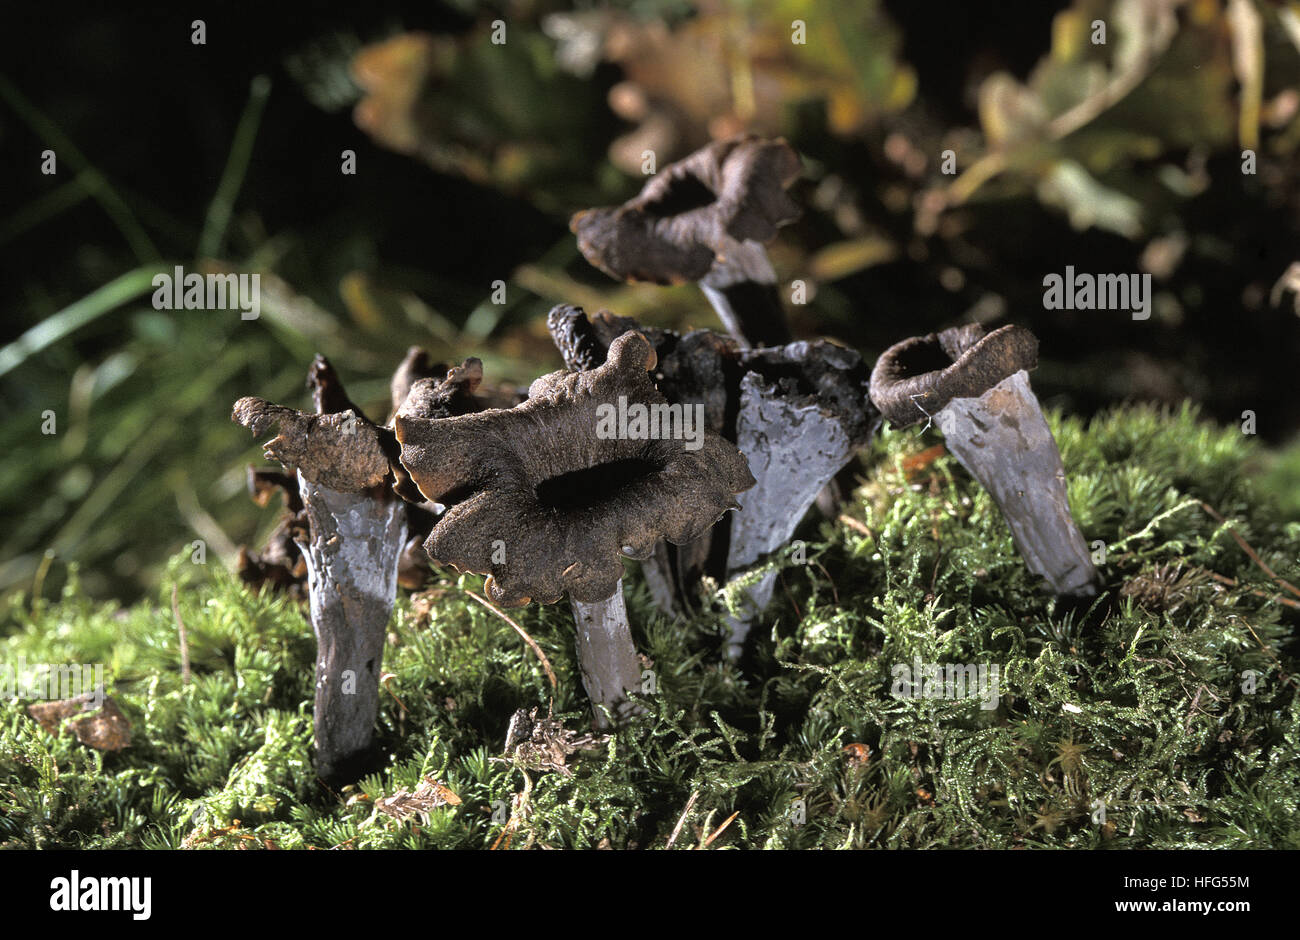 Horn of Plenty Mushroom,  craterellus cornucopioides, Edible Mushrooms Stock Photo